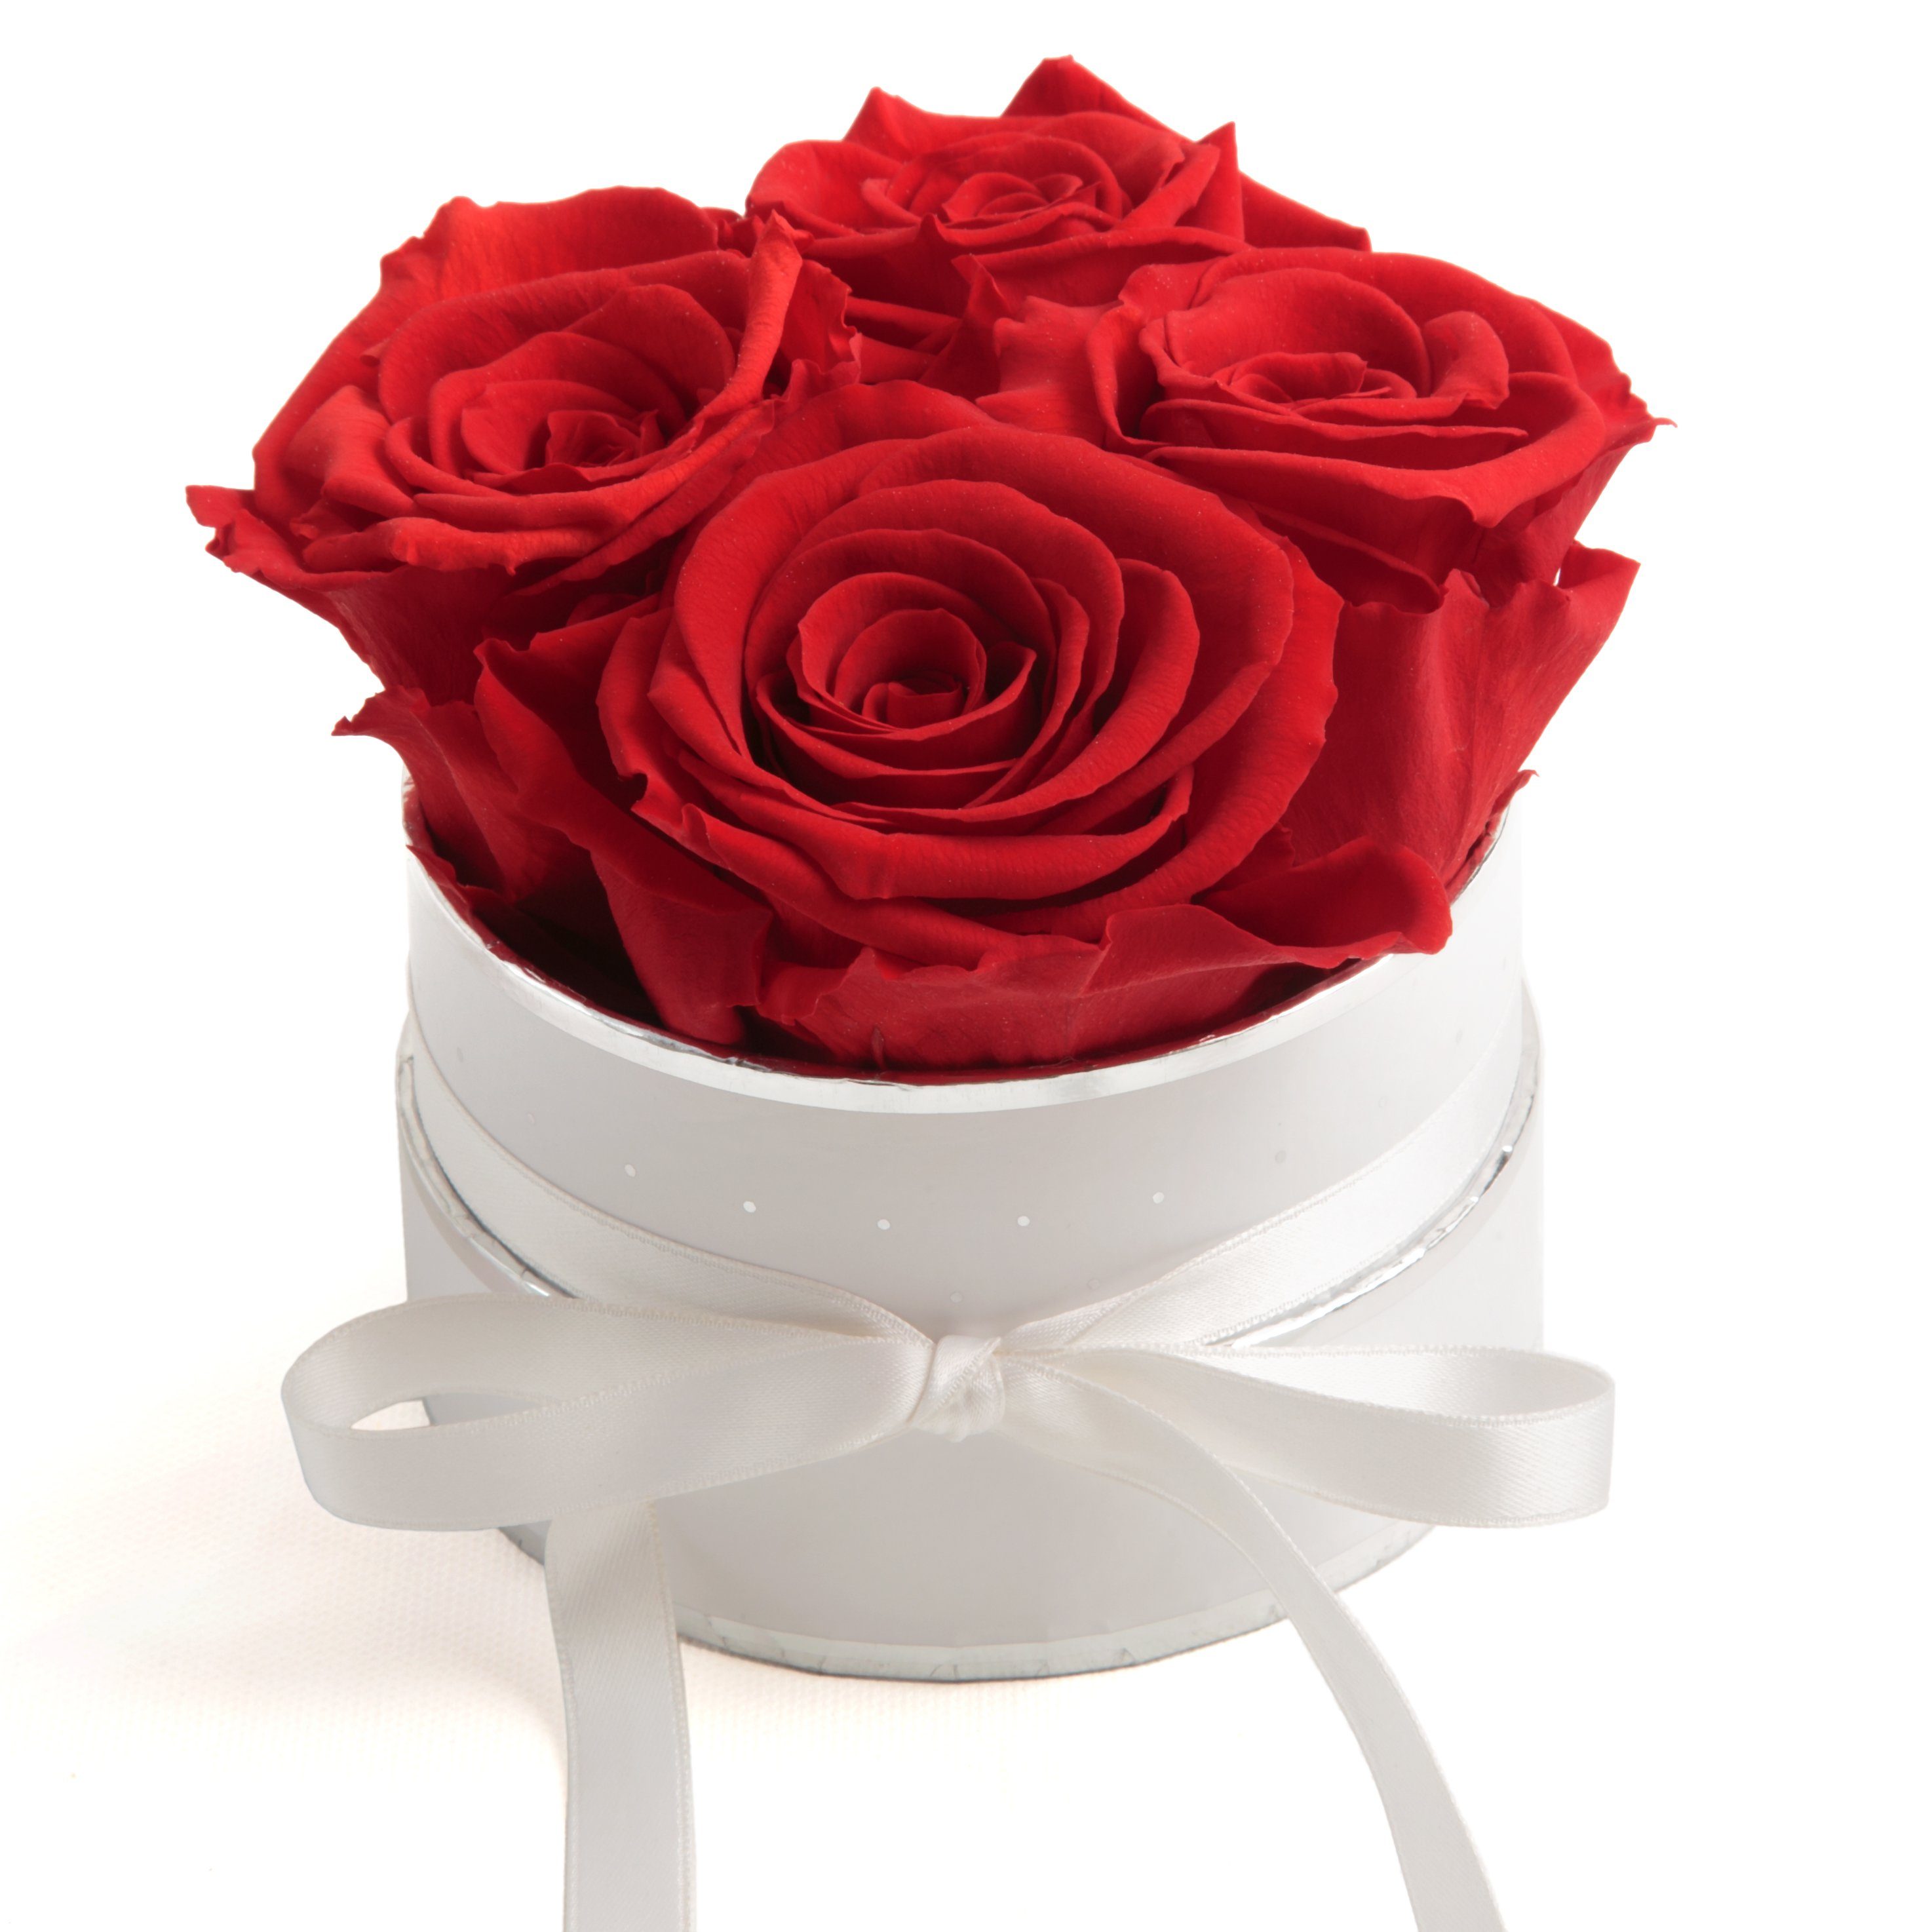 10 cm, konservierte rund inklusiv haltbar Höhe 3 Heidelberg, 4 Rosen Rose, Rosen Rosenbox echte Kunstblume SCHULZ Rot ROSEMARIE weiß Infinity Jahre Geschenkbox